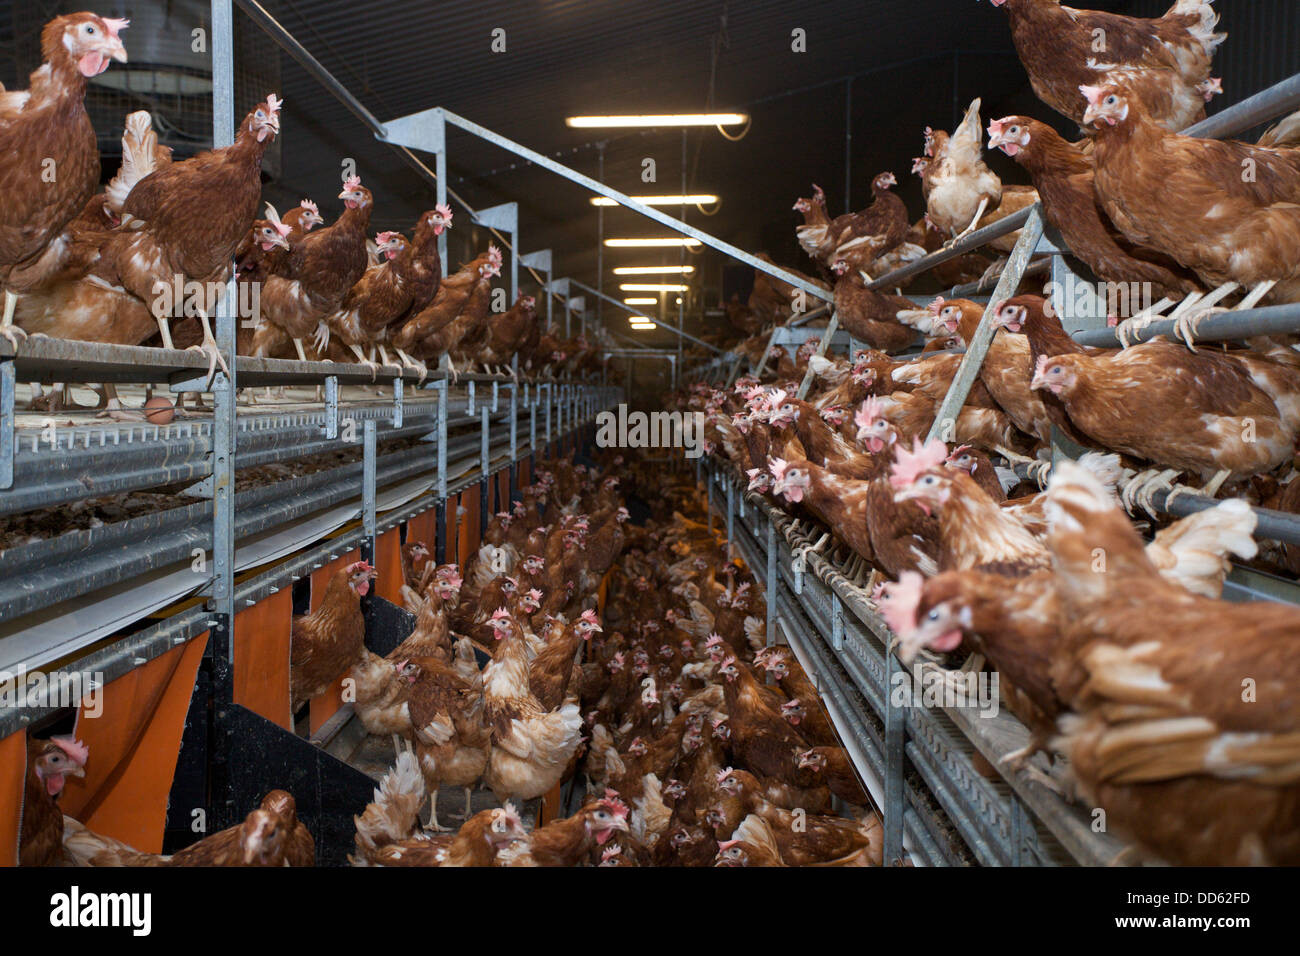 Batteria di pollo immagini e fotografie stock ad alta risoluzione - Alamy